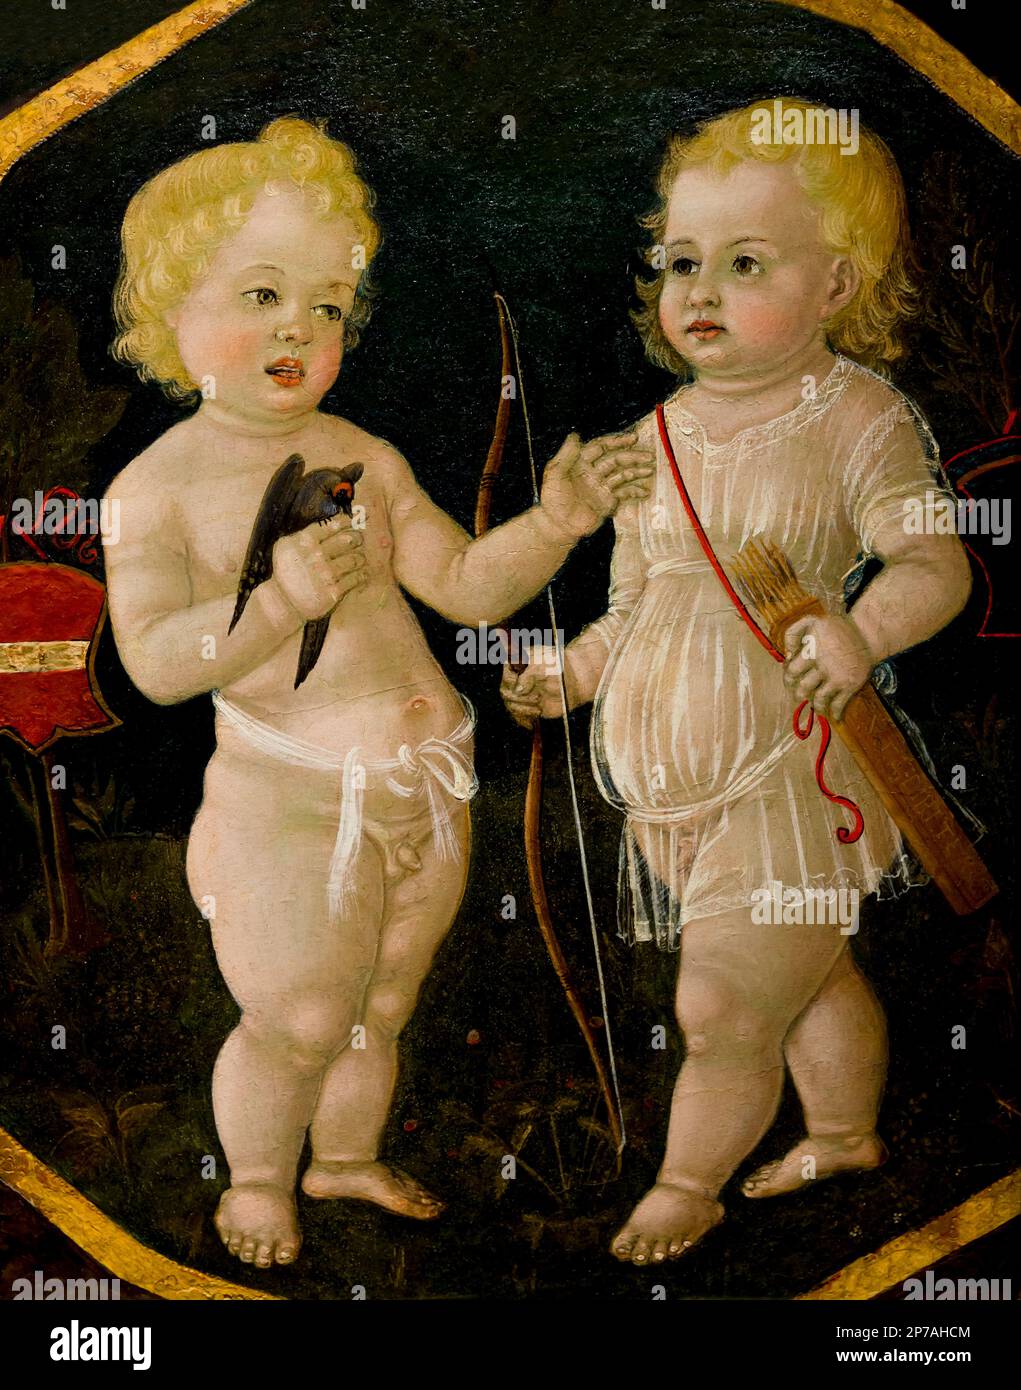 Deux jeunes garçons, Matteo di Giovanni, vers 1490, desco da parto, bac de naissance, l'Art Institute of Chicago, Chicago, Illinois, USA, Amérique du Nord, Banque D'Images